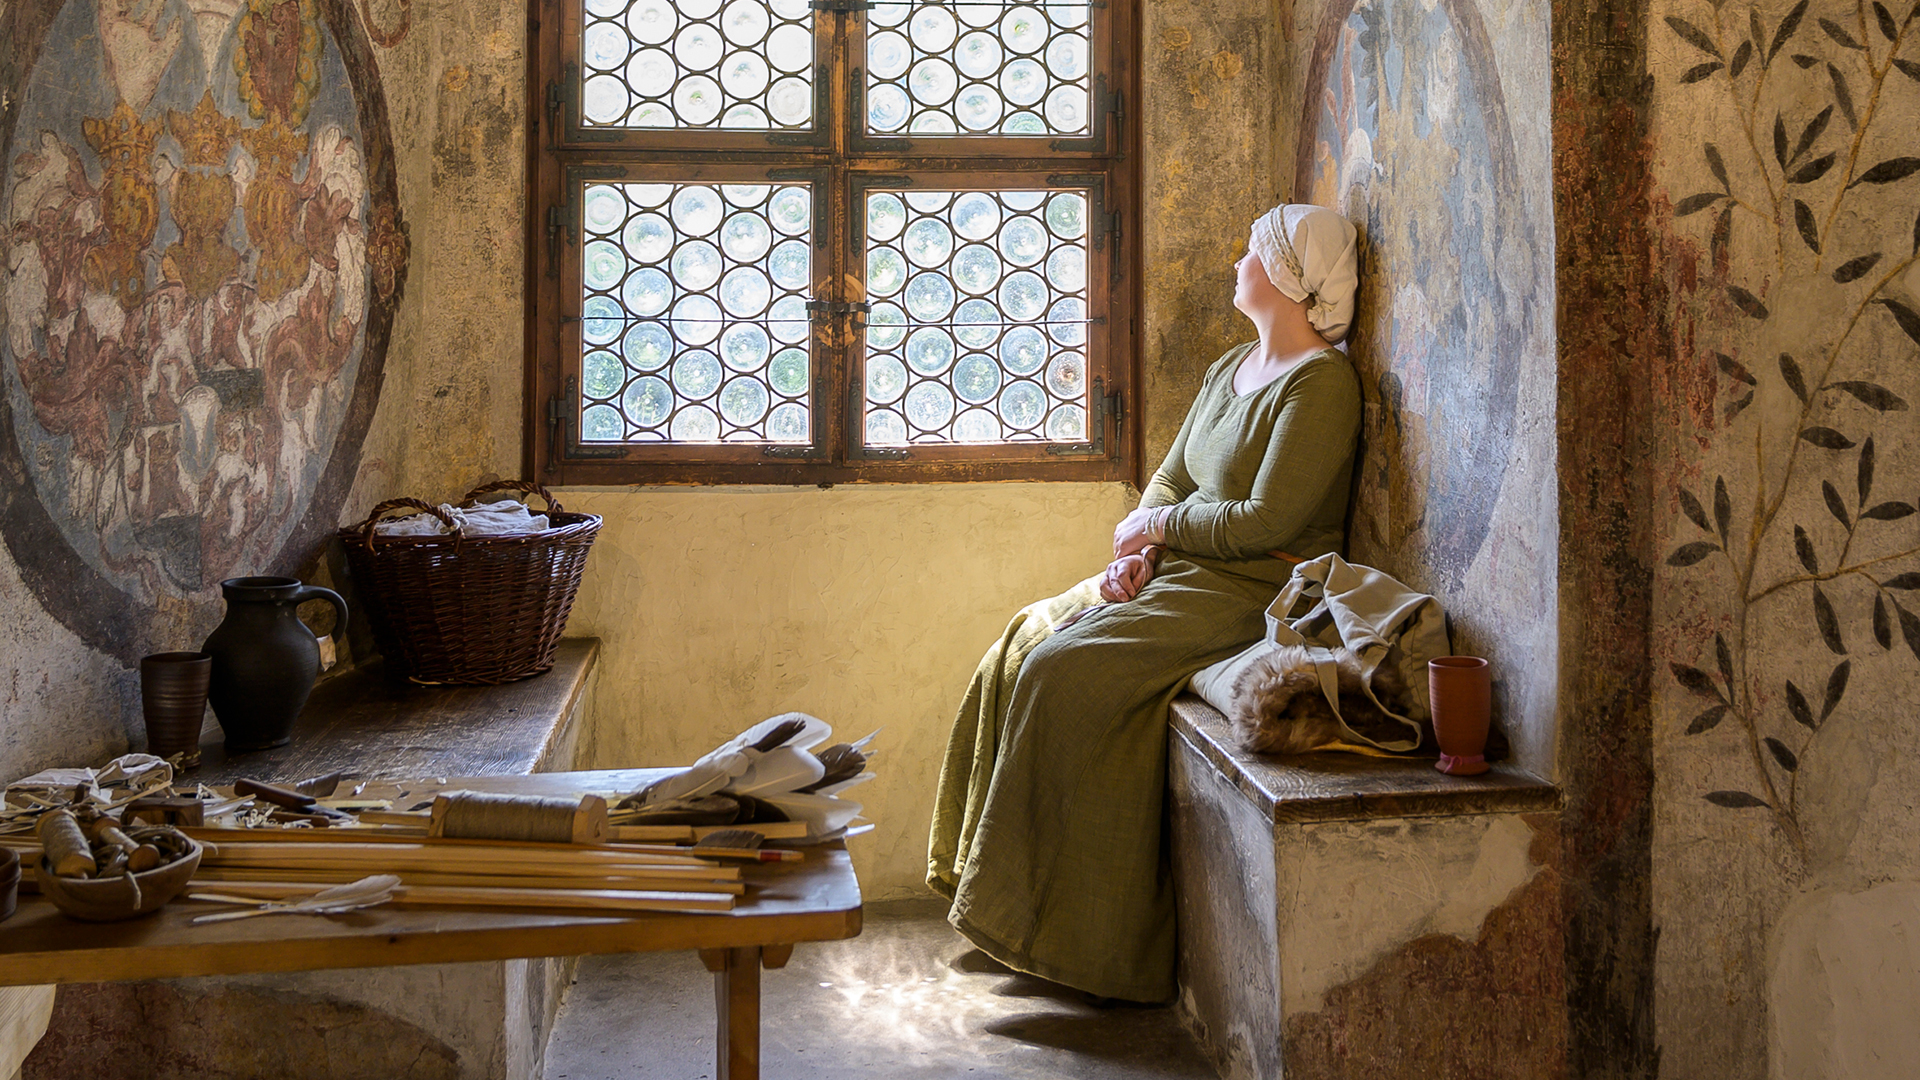 Eine traditionell gekleidete Frau sitzt auf einer Holzbank in einem alten Zimmer und schaut aus dem Fenster. Vor ihr liegen Haushaltsgeräte auf einem Holztisch. 